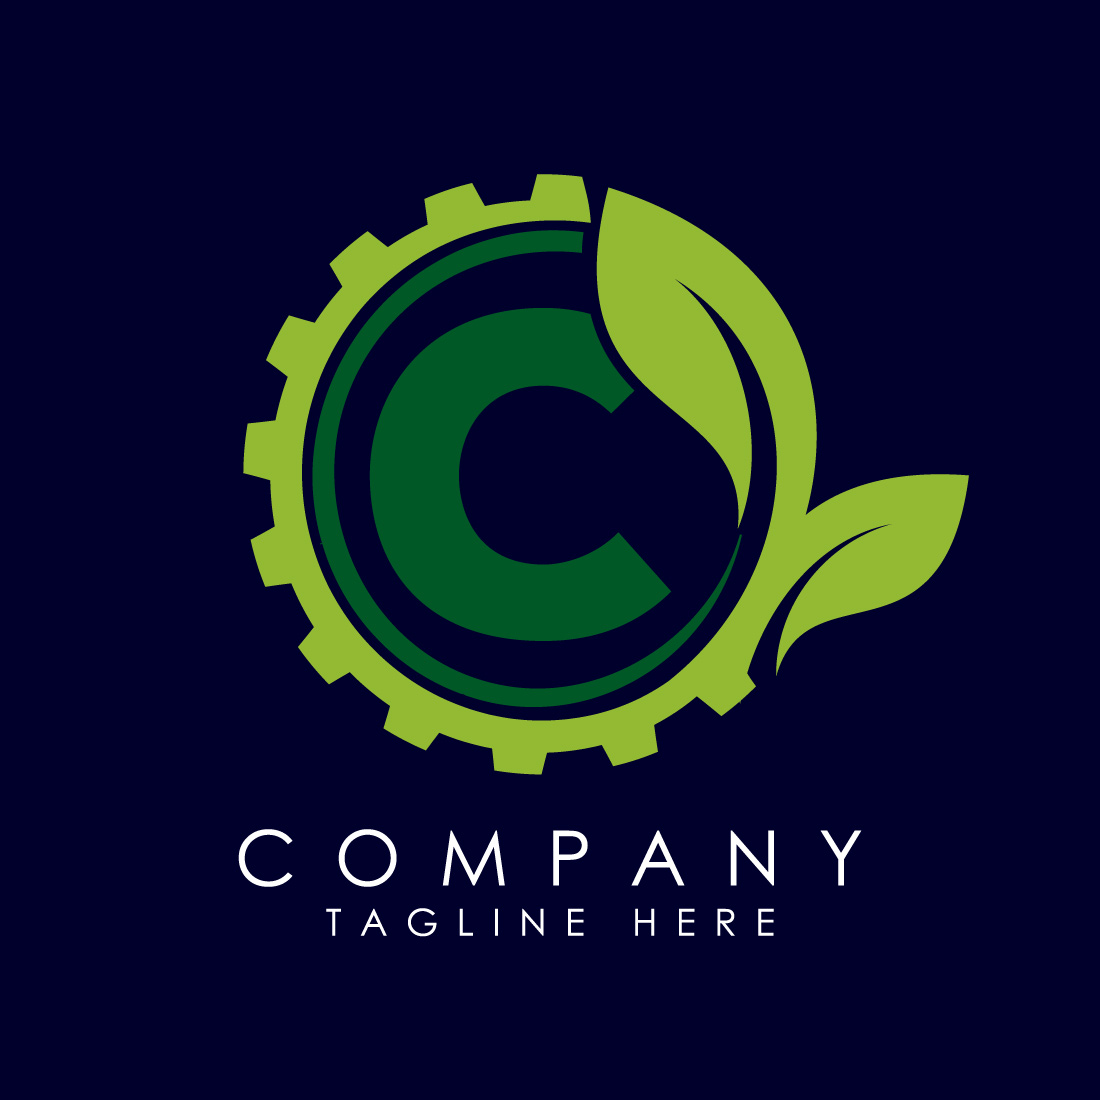 green leaf logo vector  Vector logo, Leaf logo, Graphic design typography